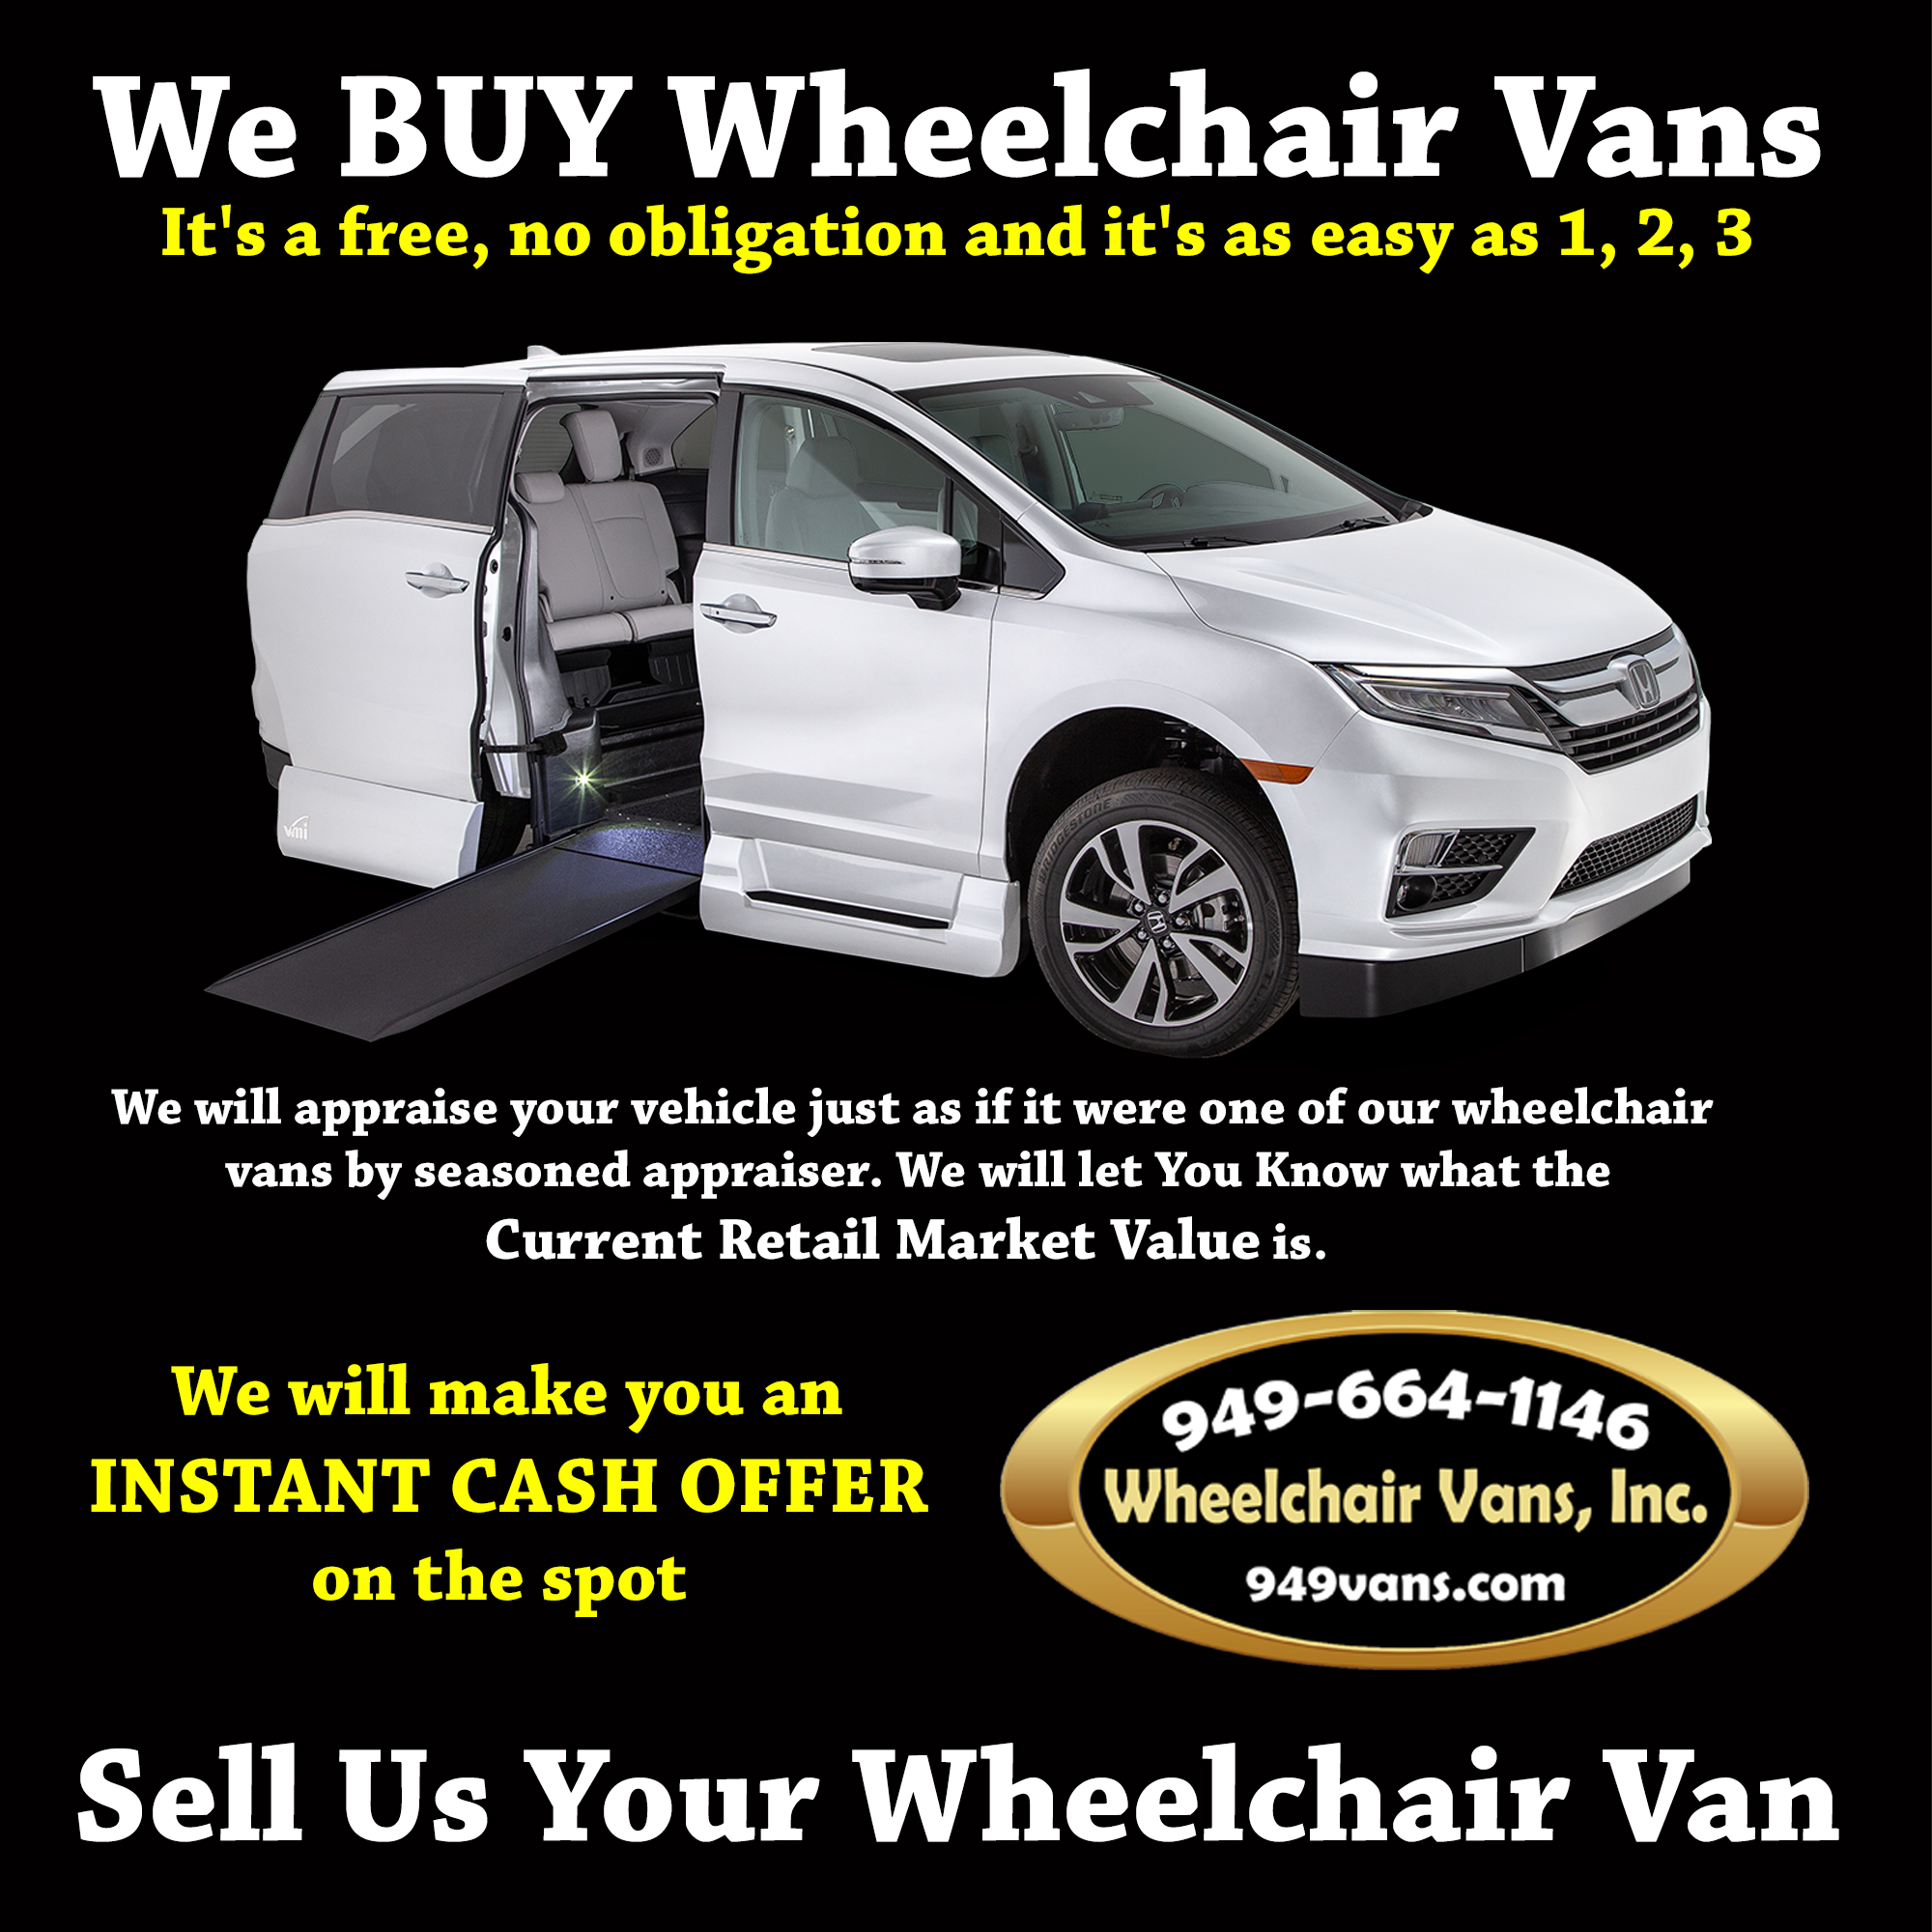 We buy Wheelchair Vans - Sell us your Wheelchair Van 